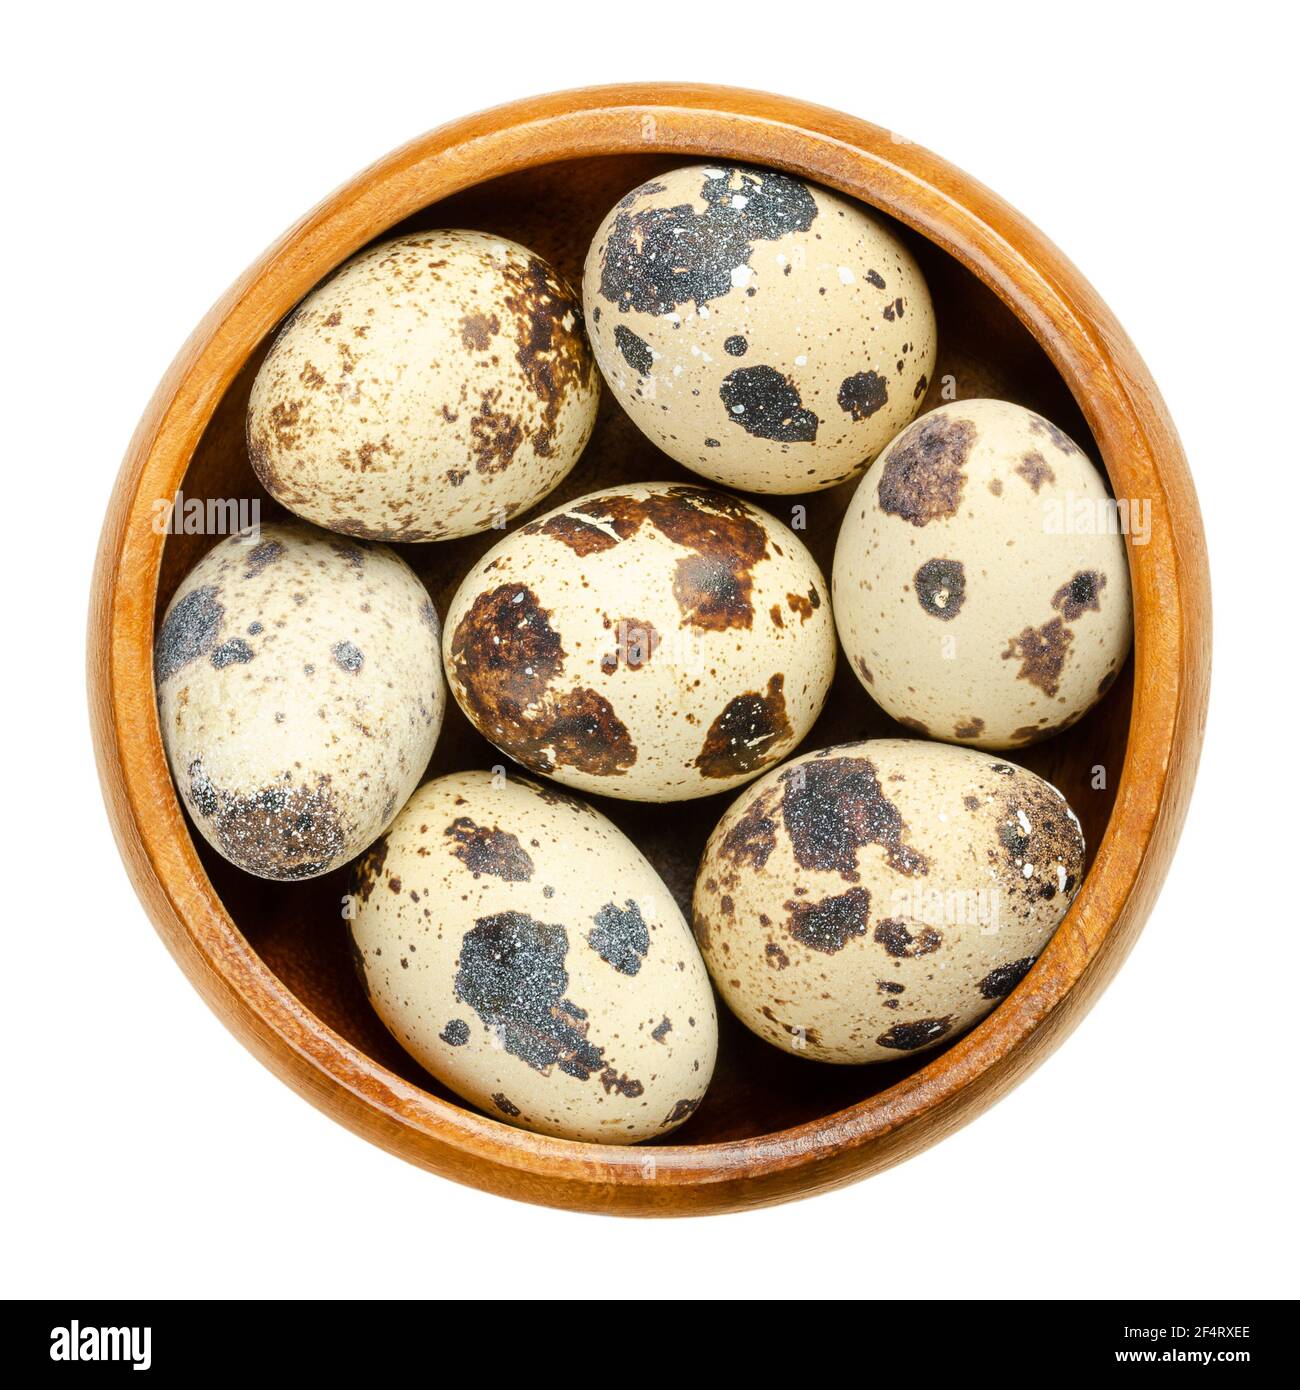 Gruppe von frischen Wachteleiern in einer Holzschüssel. Gesprenkelt, ganze Eier von Wachteln, Coturnix Coturnix, eine Delikatesse, roh oder gekocht verwendet. Nahaufnahme. Stockfoto